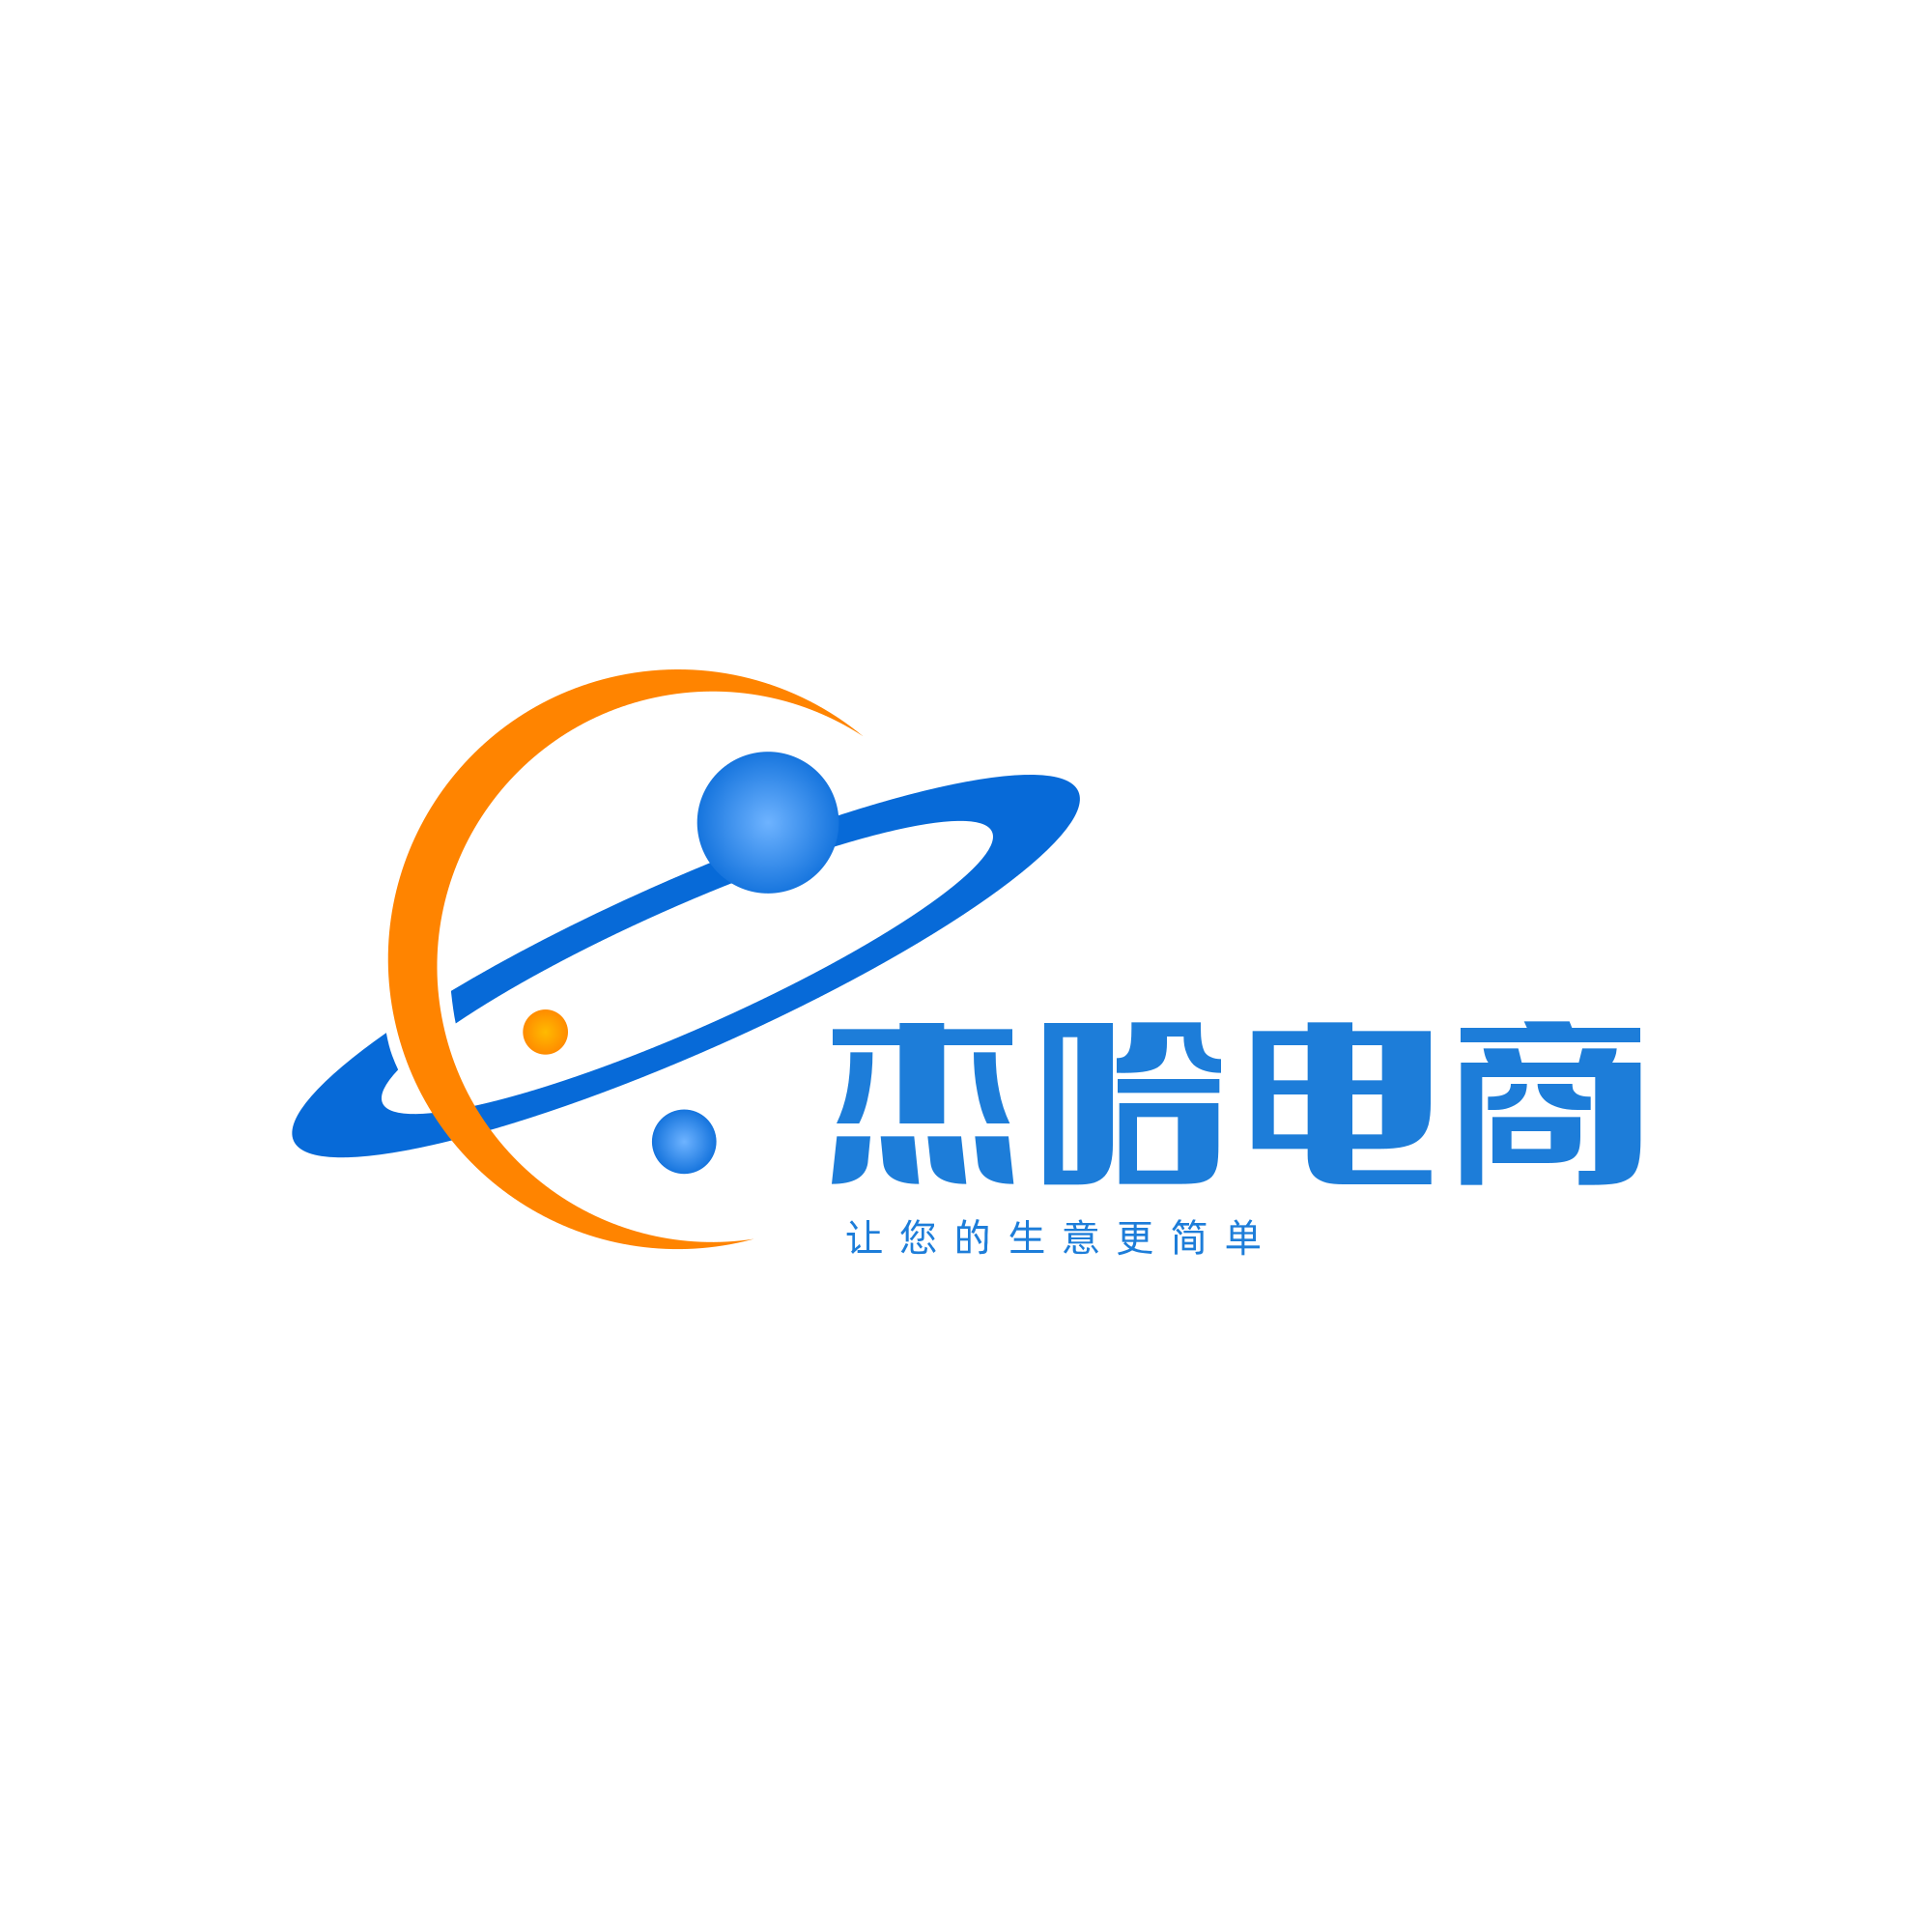 荟保街-为您提供全方位的保险服务-泾河新城浭途网络工作室